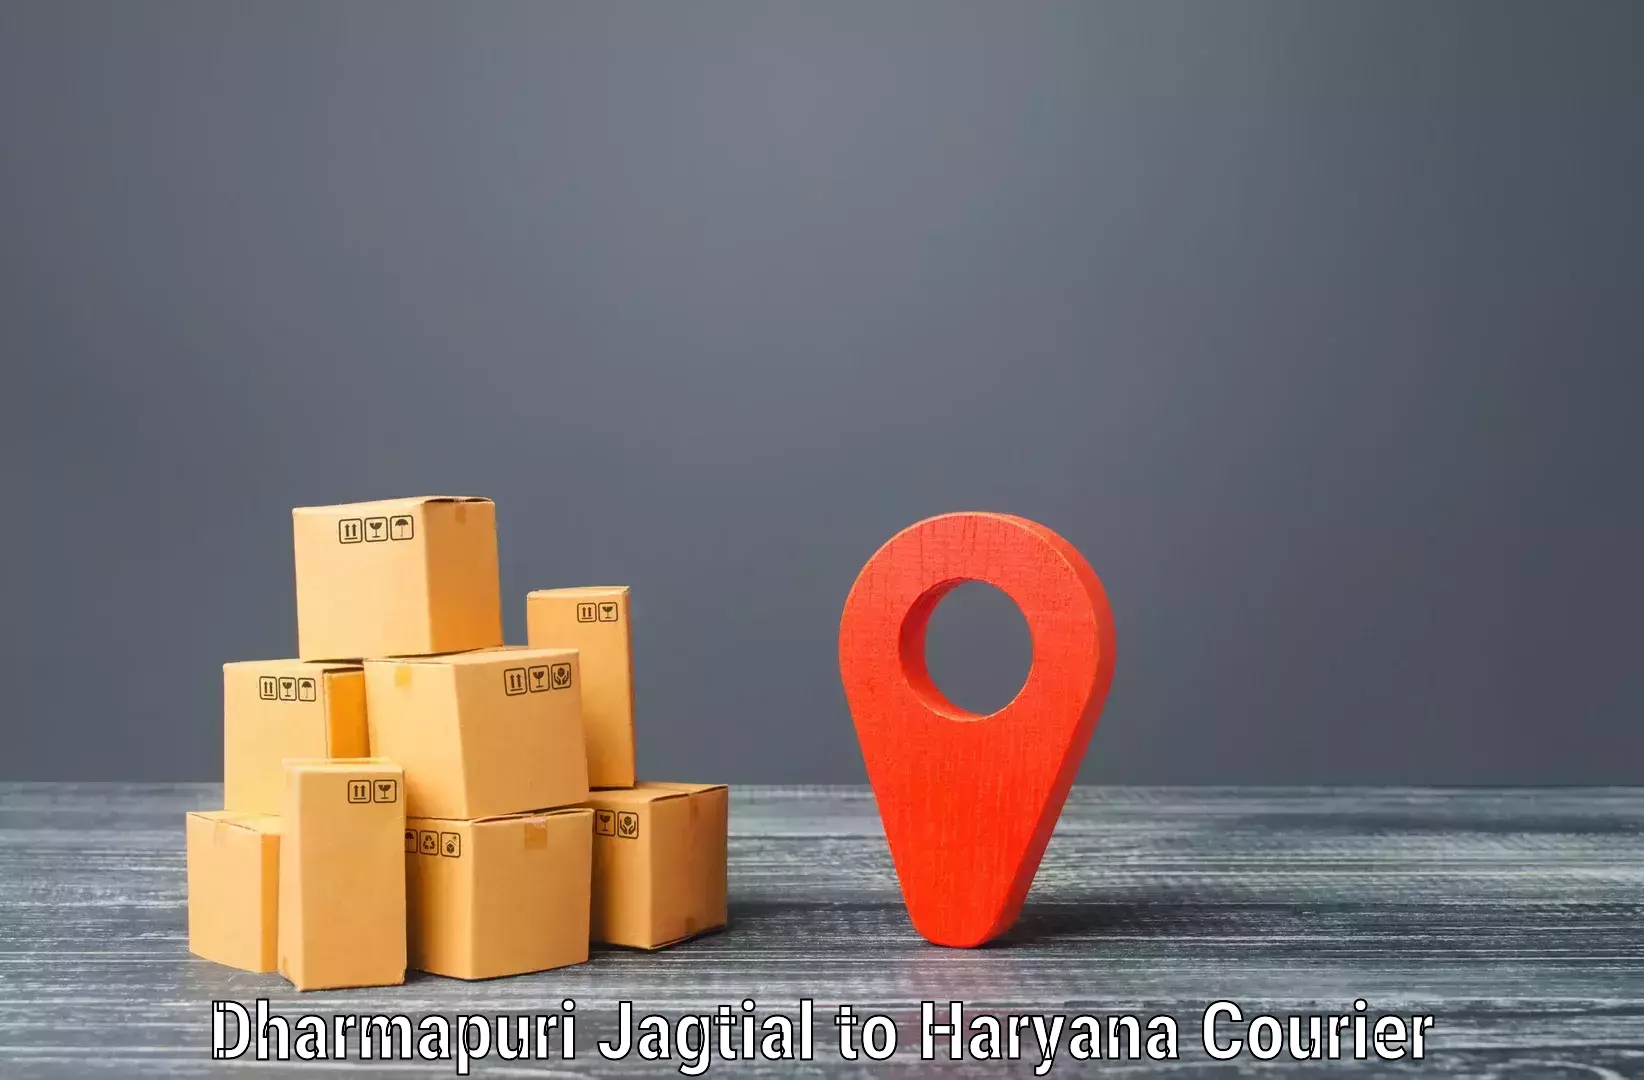 Doorstep delivery service Dharmapuri Jagtial to Sonipat